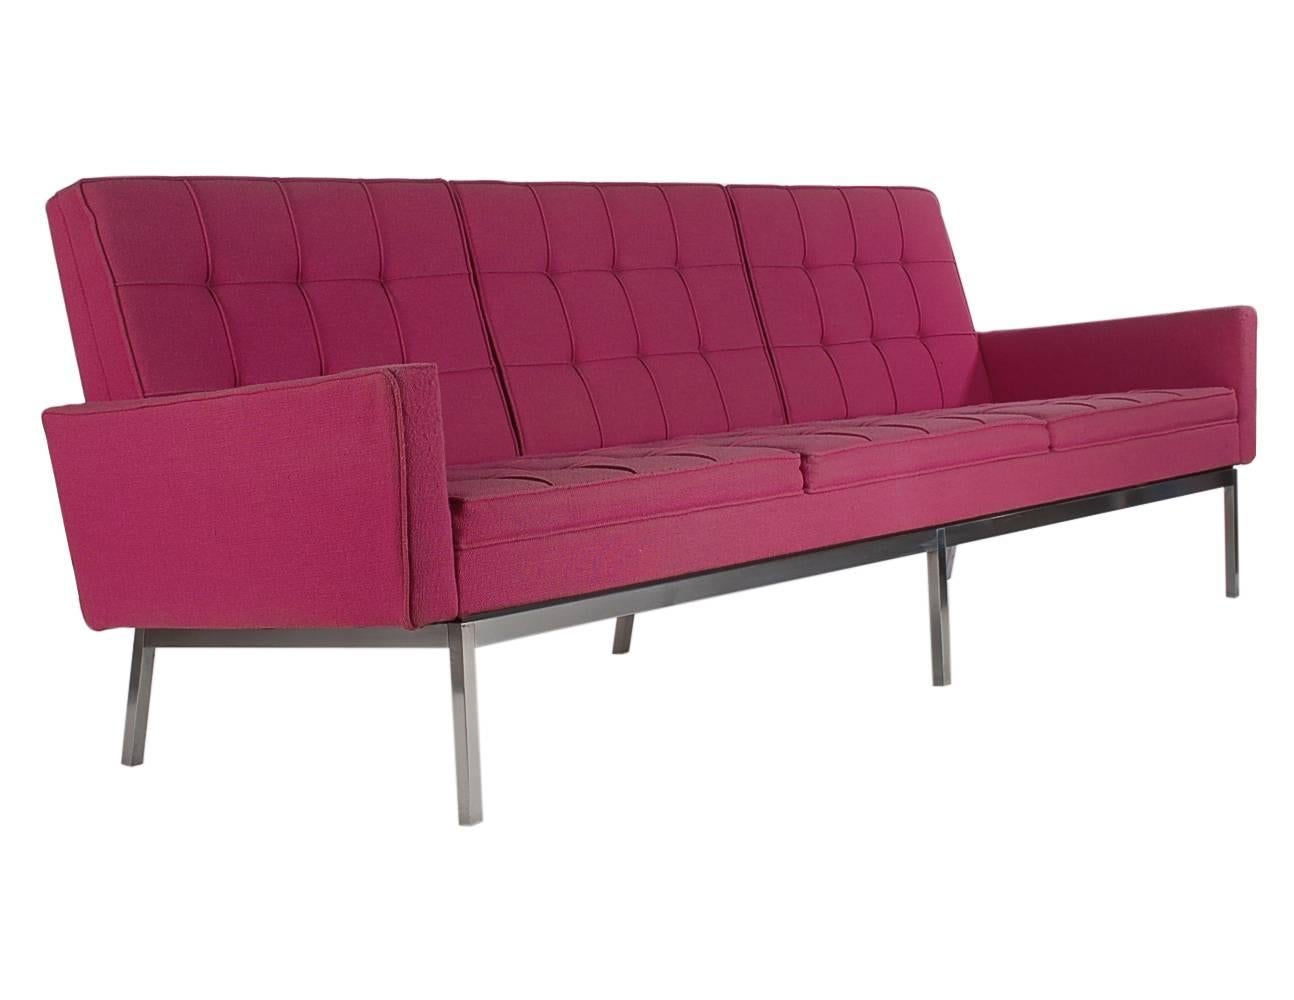 Ein ikonisches Sofa, das von Florence Knoll entworfen und von Knoll in den frühen 1960er Jahren hergestellt wurde. Das Gestell ist aus rostfreiem Stahl, die Polsterung aus fuchsiafarbenem Tweed.